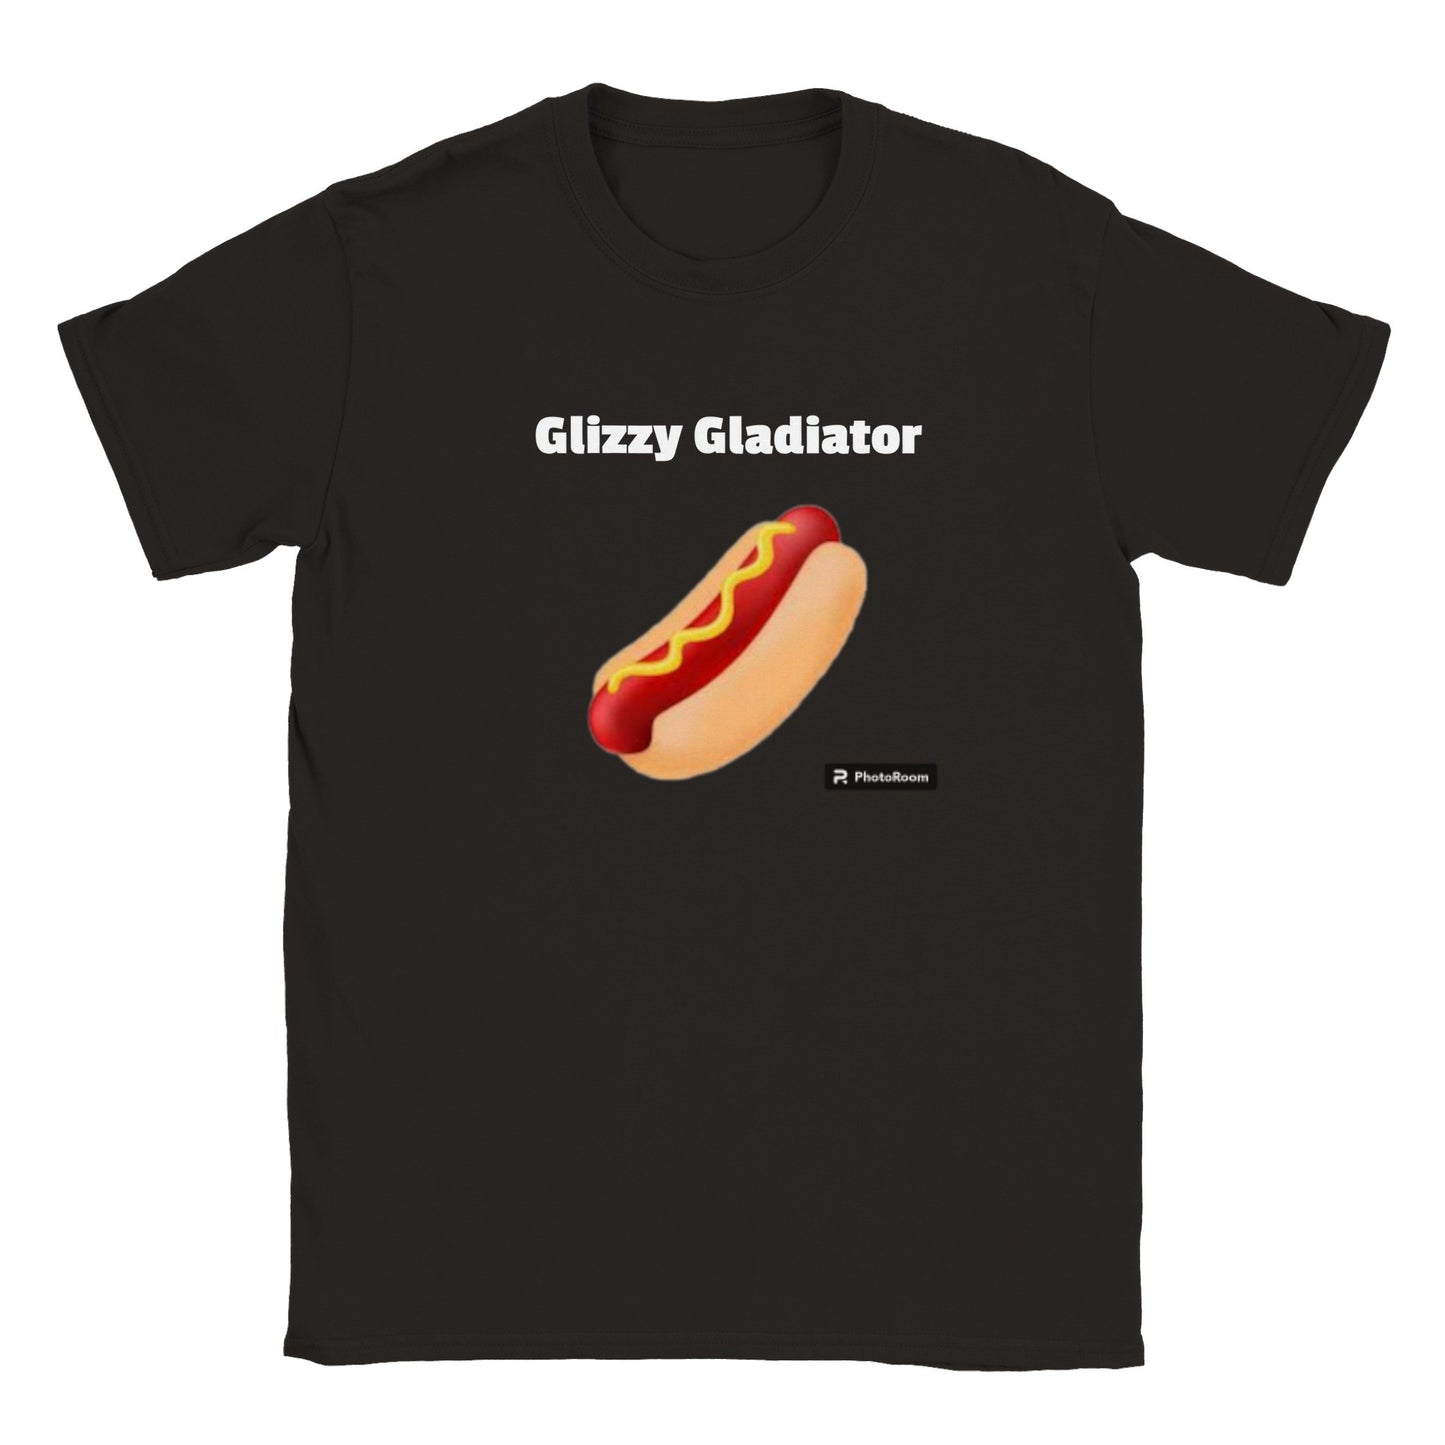 Glizzy Gladiator Tee